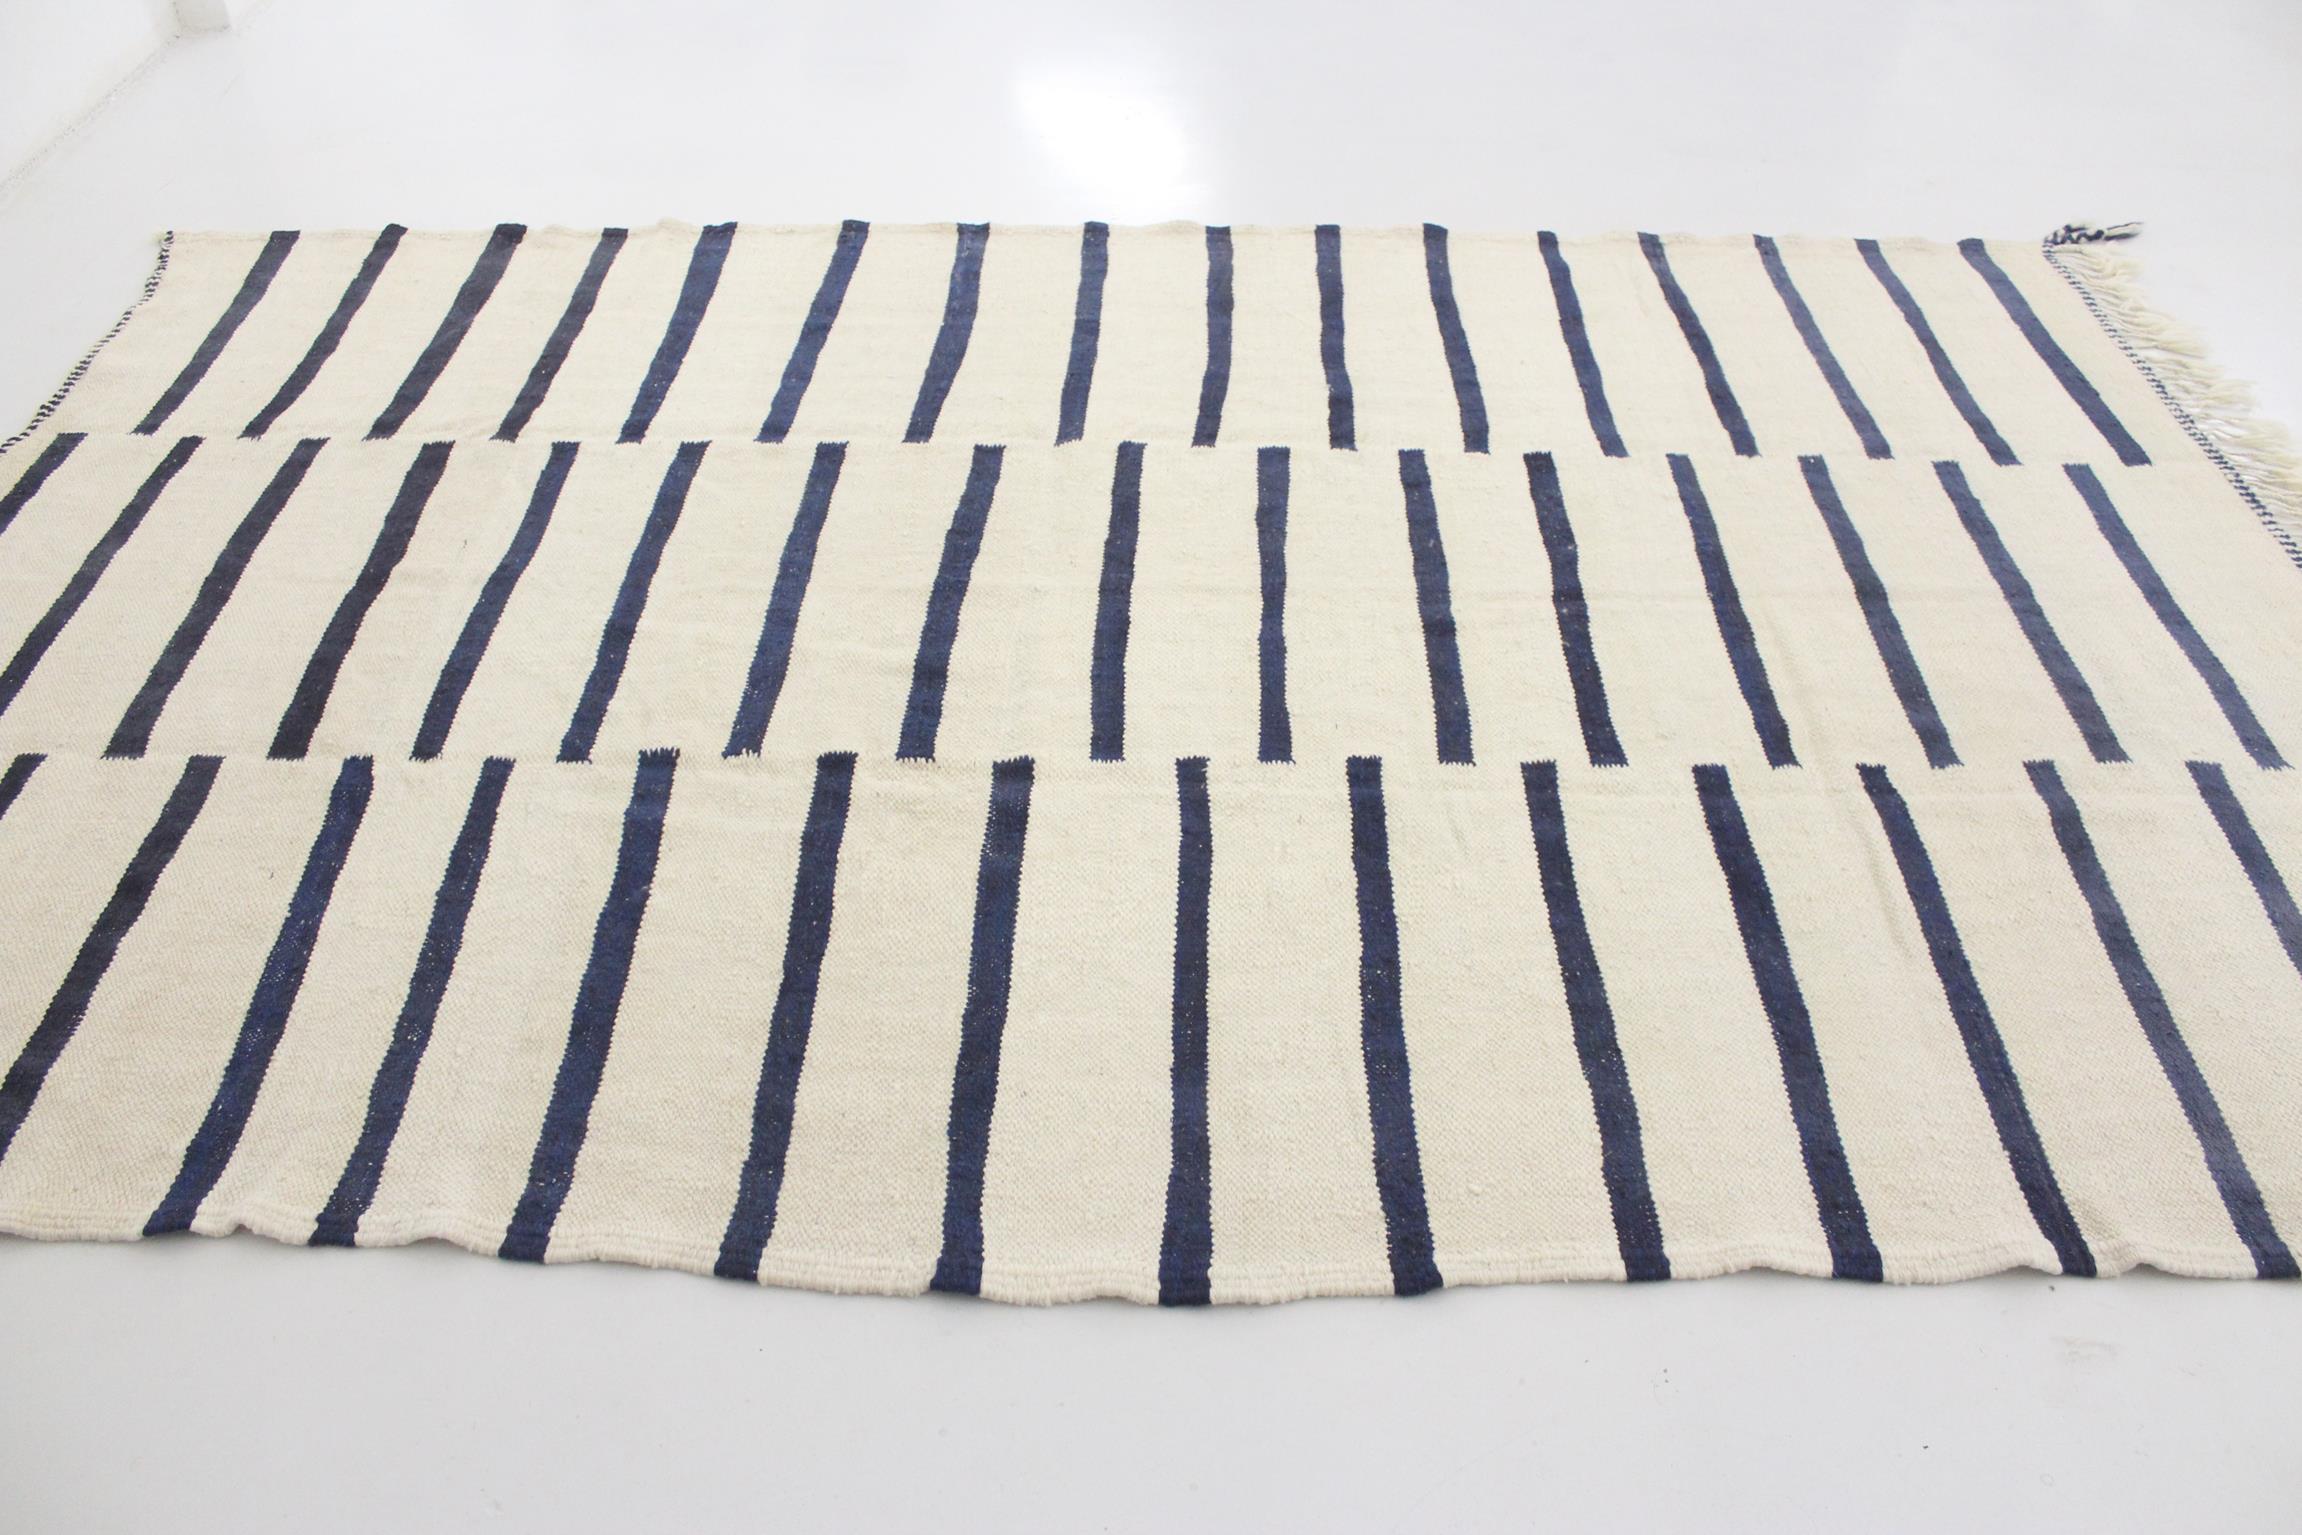 Modern Moroccan kilim rug - Cream/blue - 6.5x10.6feet / 200x323cm For Sale 4